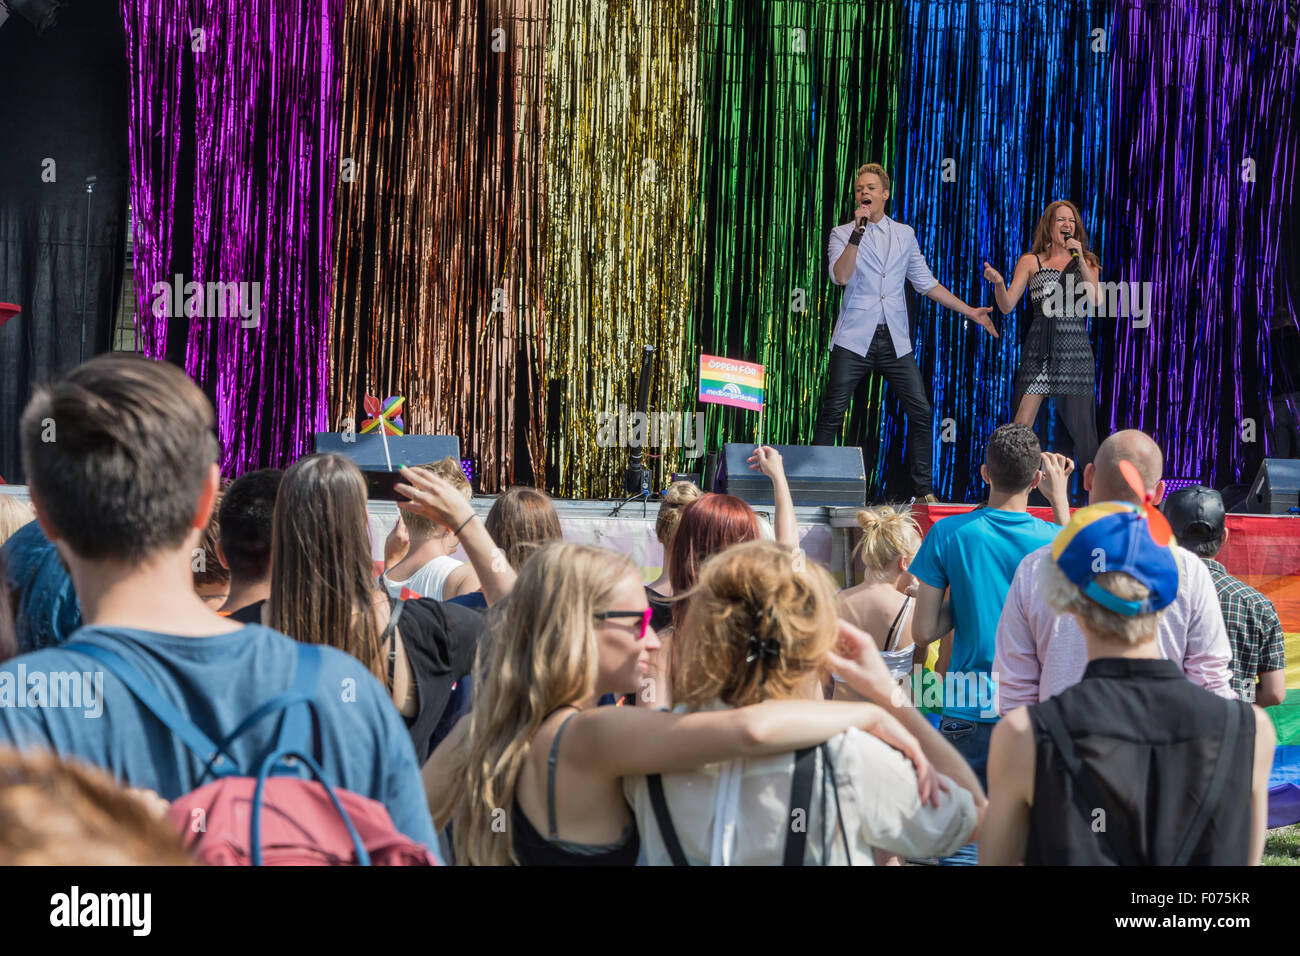 Unterhaltungsprogramm am Endpunkt der Parade ich Folkets Park. Parade Rainbow Festival Malmö Pride 2015 schließen. Nachdem eine Woche lang Pride Festival eine Parade durch die Straßen von Malmö mit 7 500 Teilnehmern, endete eine Rekordzahl, die Feierlichkeiten mit einer Party in den zentral platzierten Folkets Park (The Peoples Park). Stockfoto